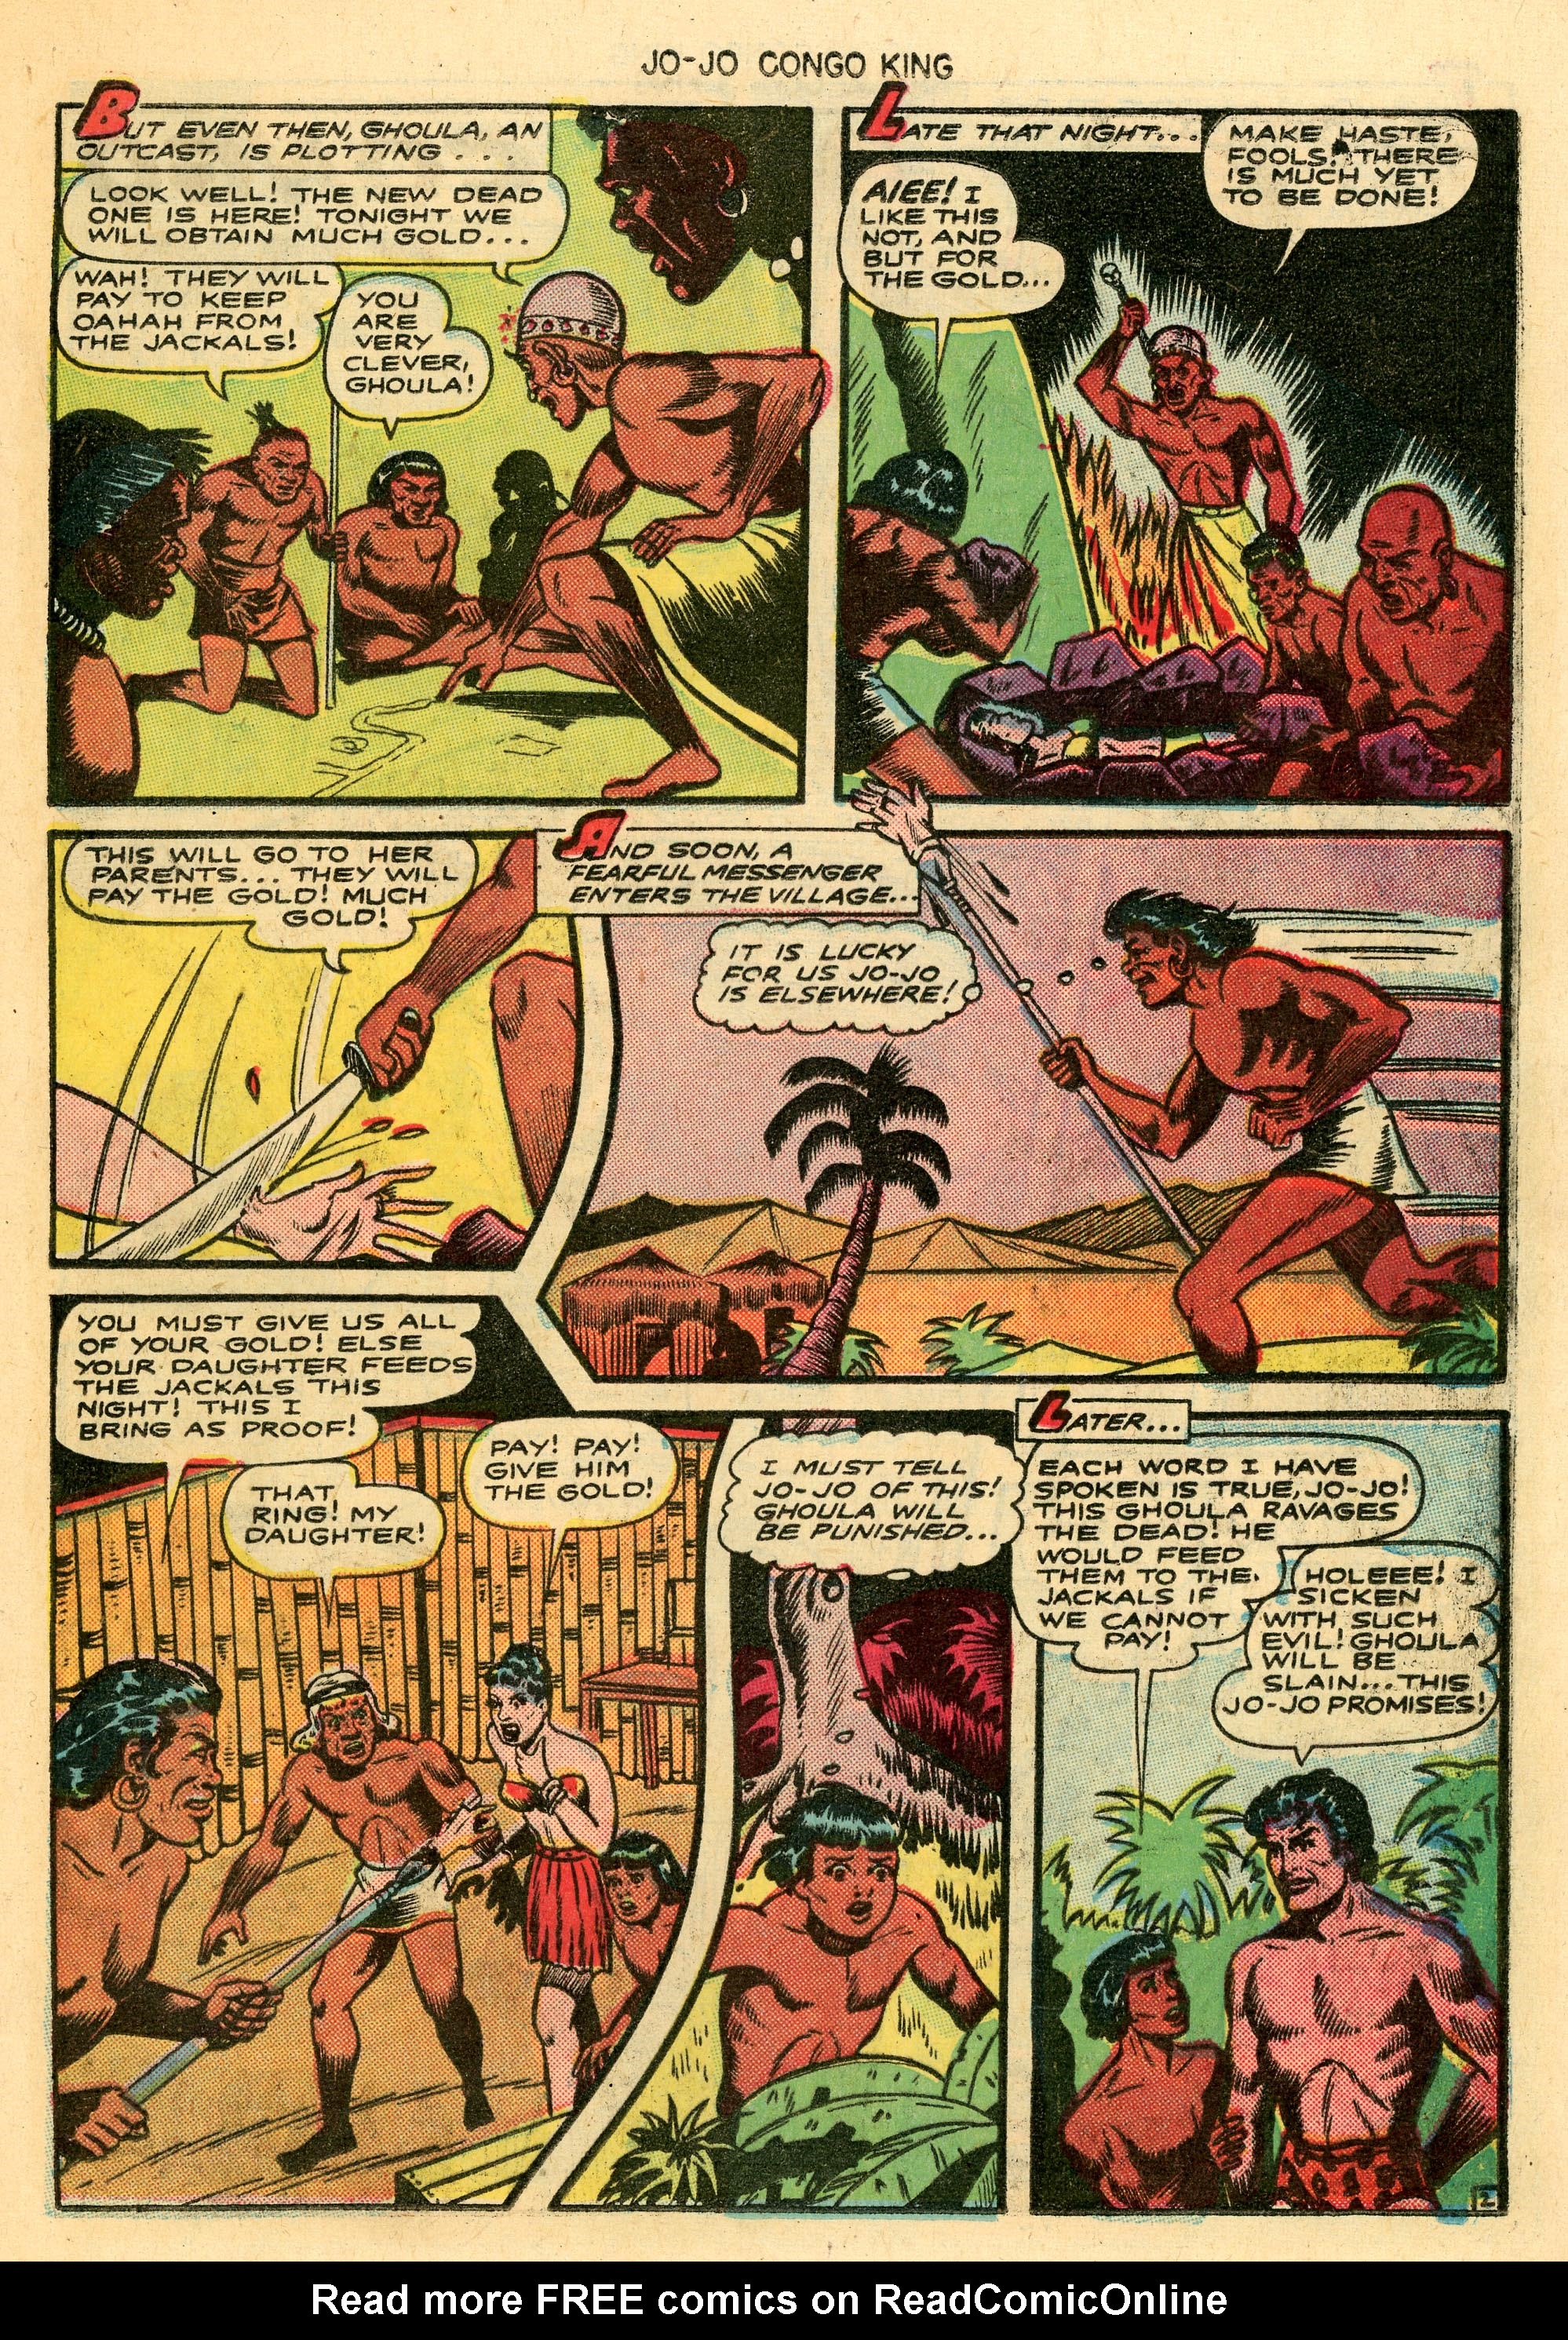 Read online Jo-Jo Congo King comic -  Issue #10 - 25